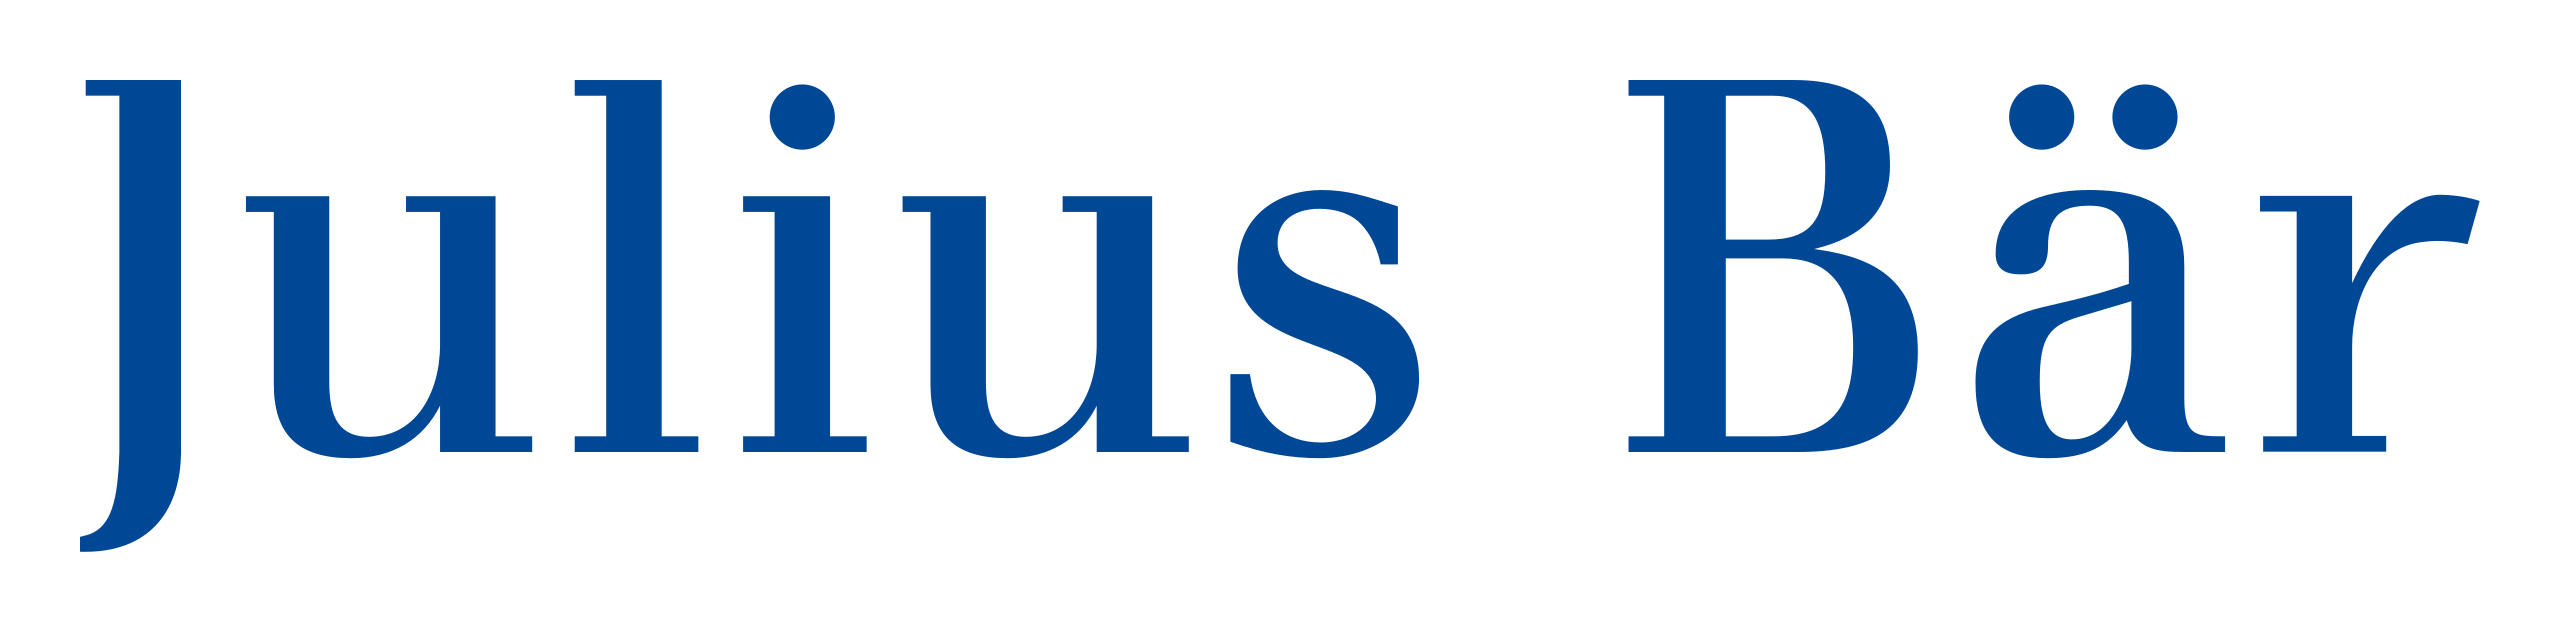 julius-bar-logo